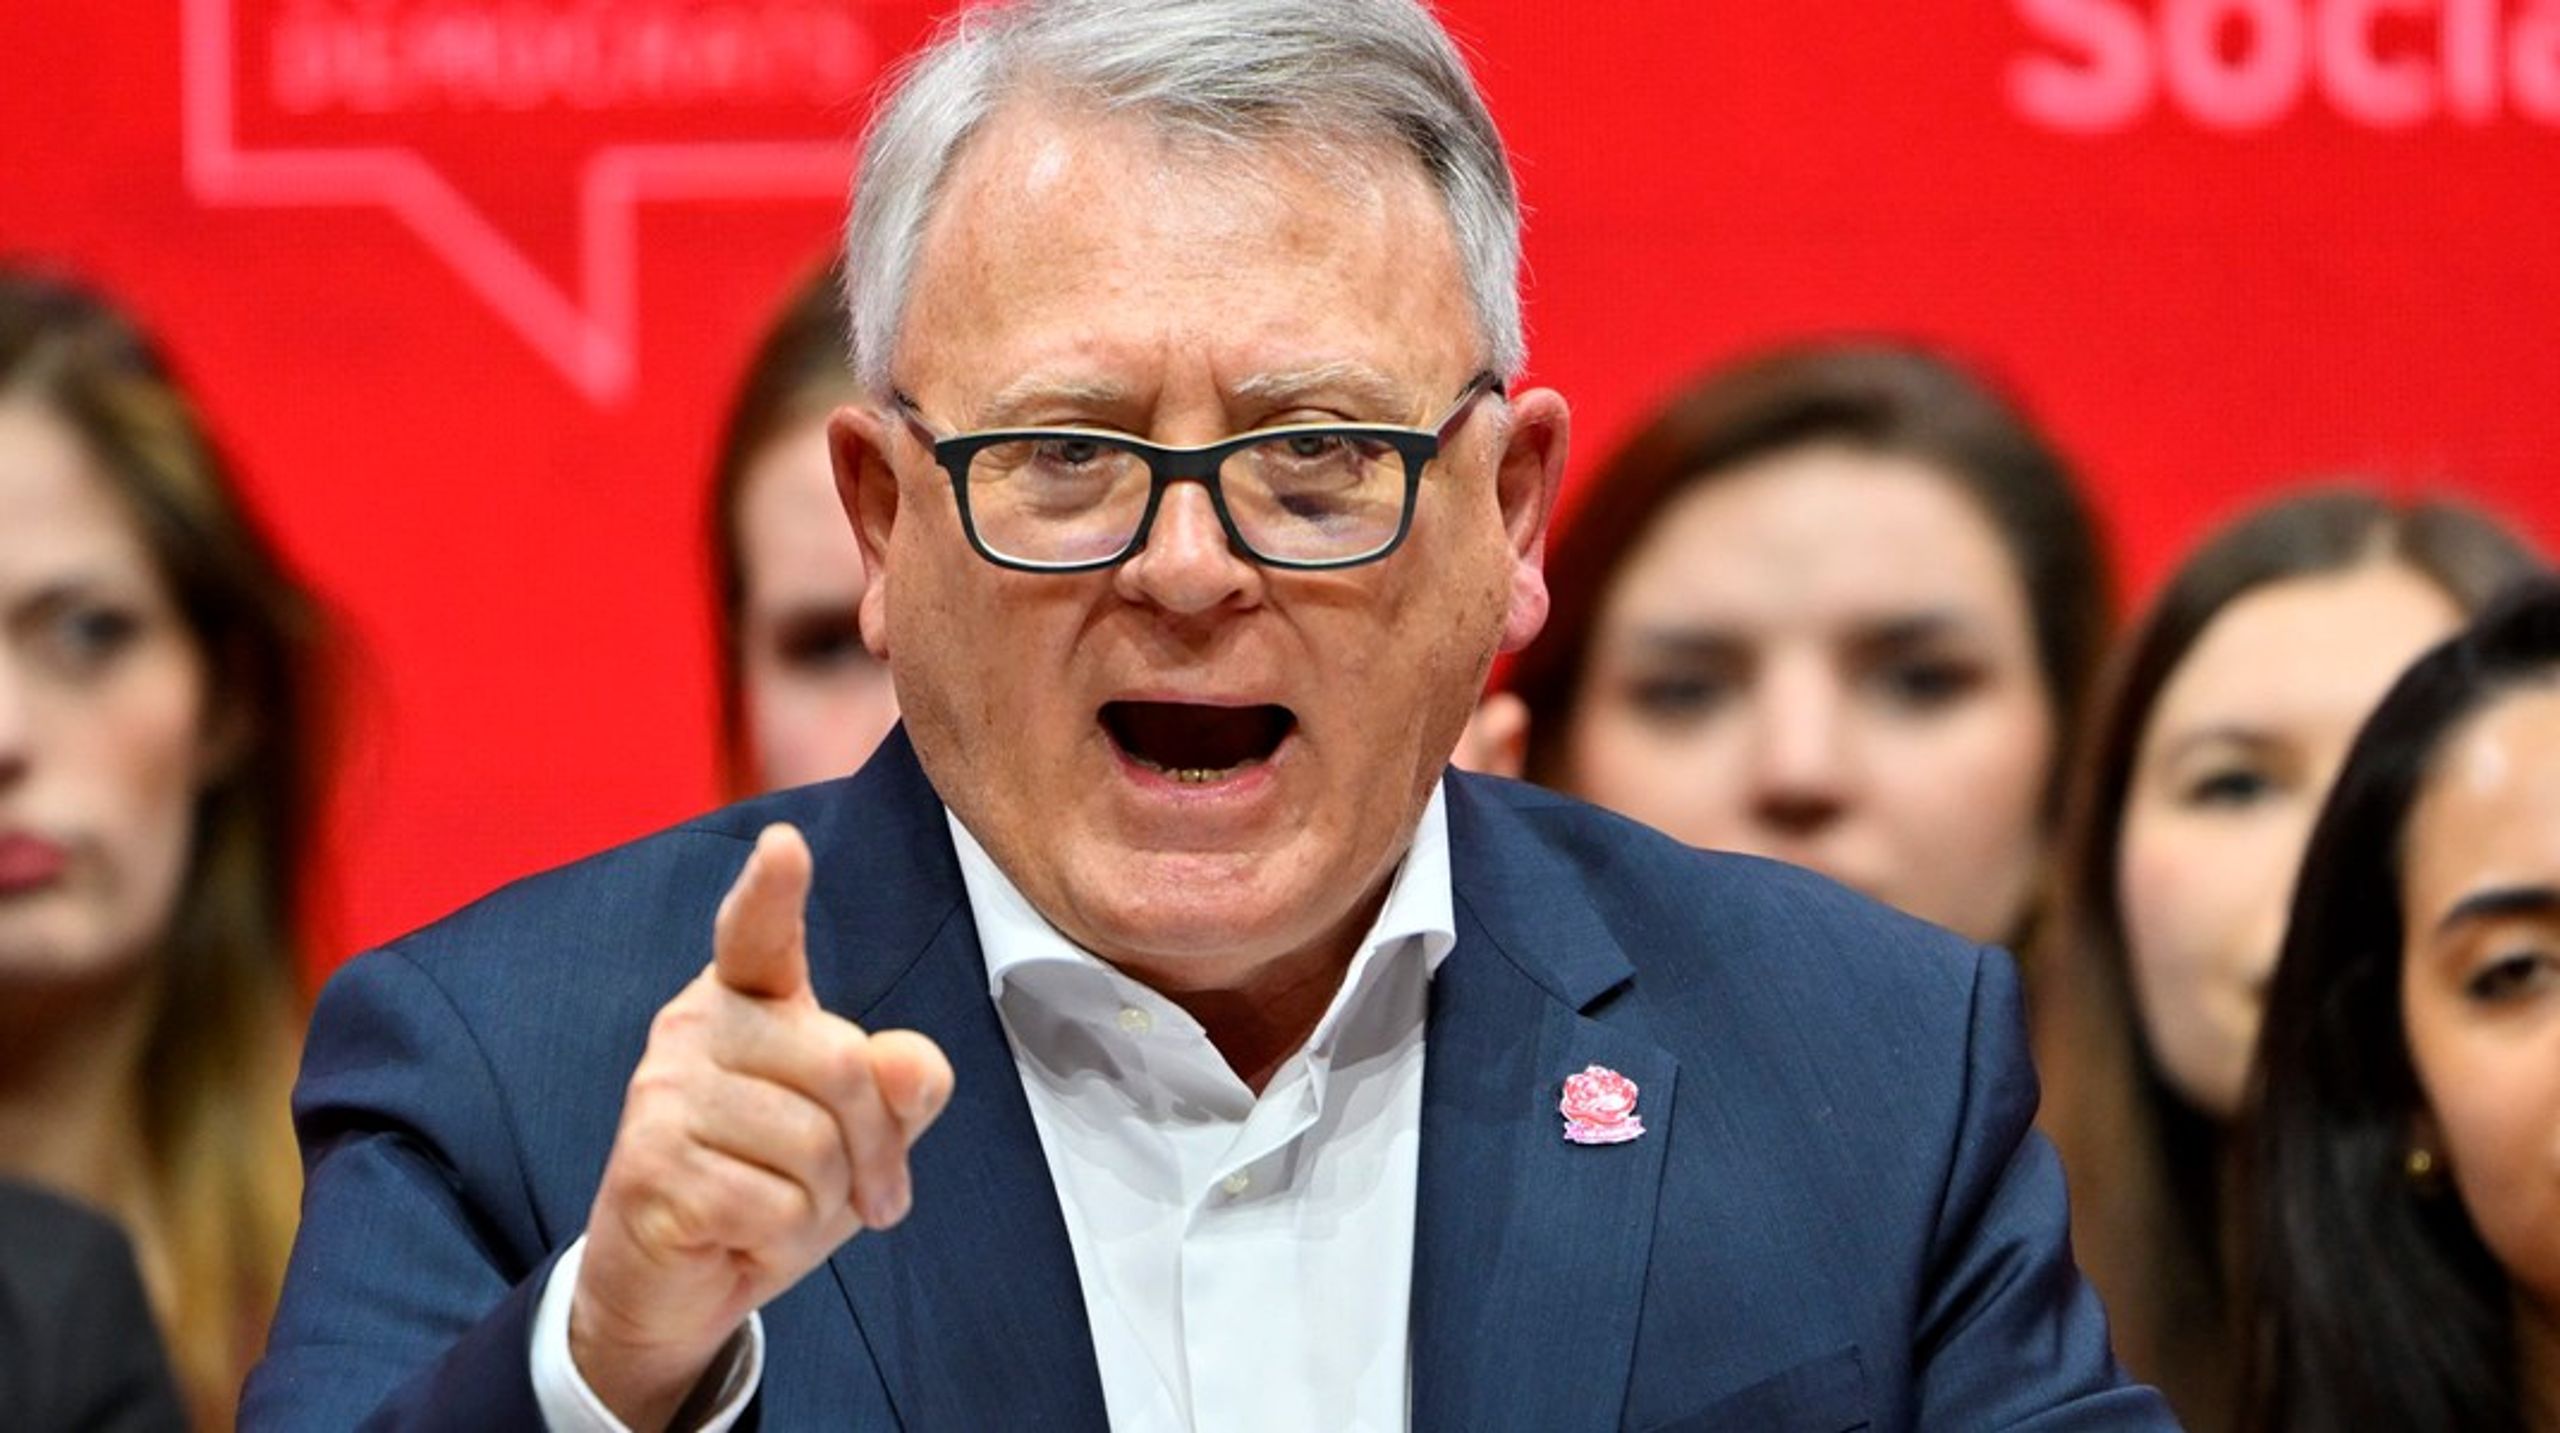 Nicolas Schmit, som er EU's jobkommissær, er udpeget af de europæiske socialdemokrater som kandidat til posten som formand for EU-Kommissionen efter Ursula von der Leyen.